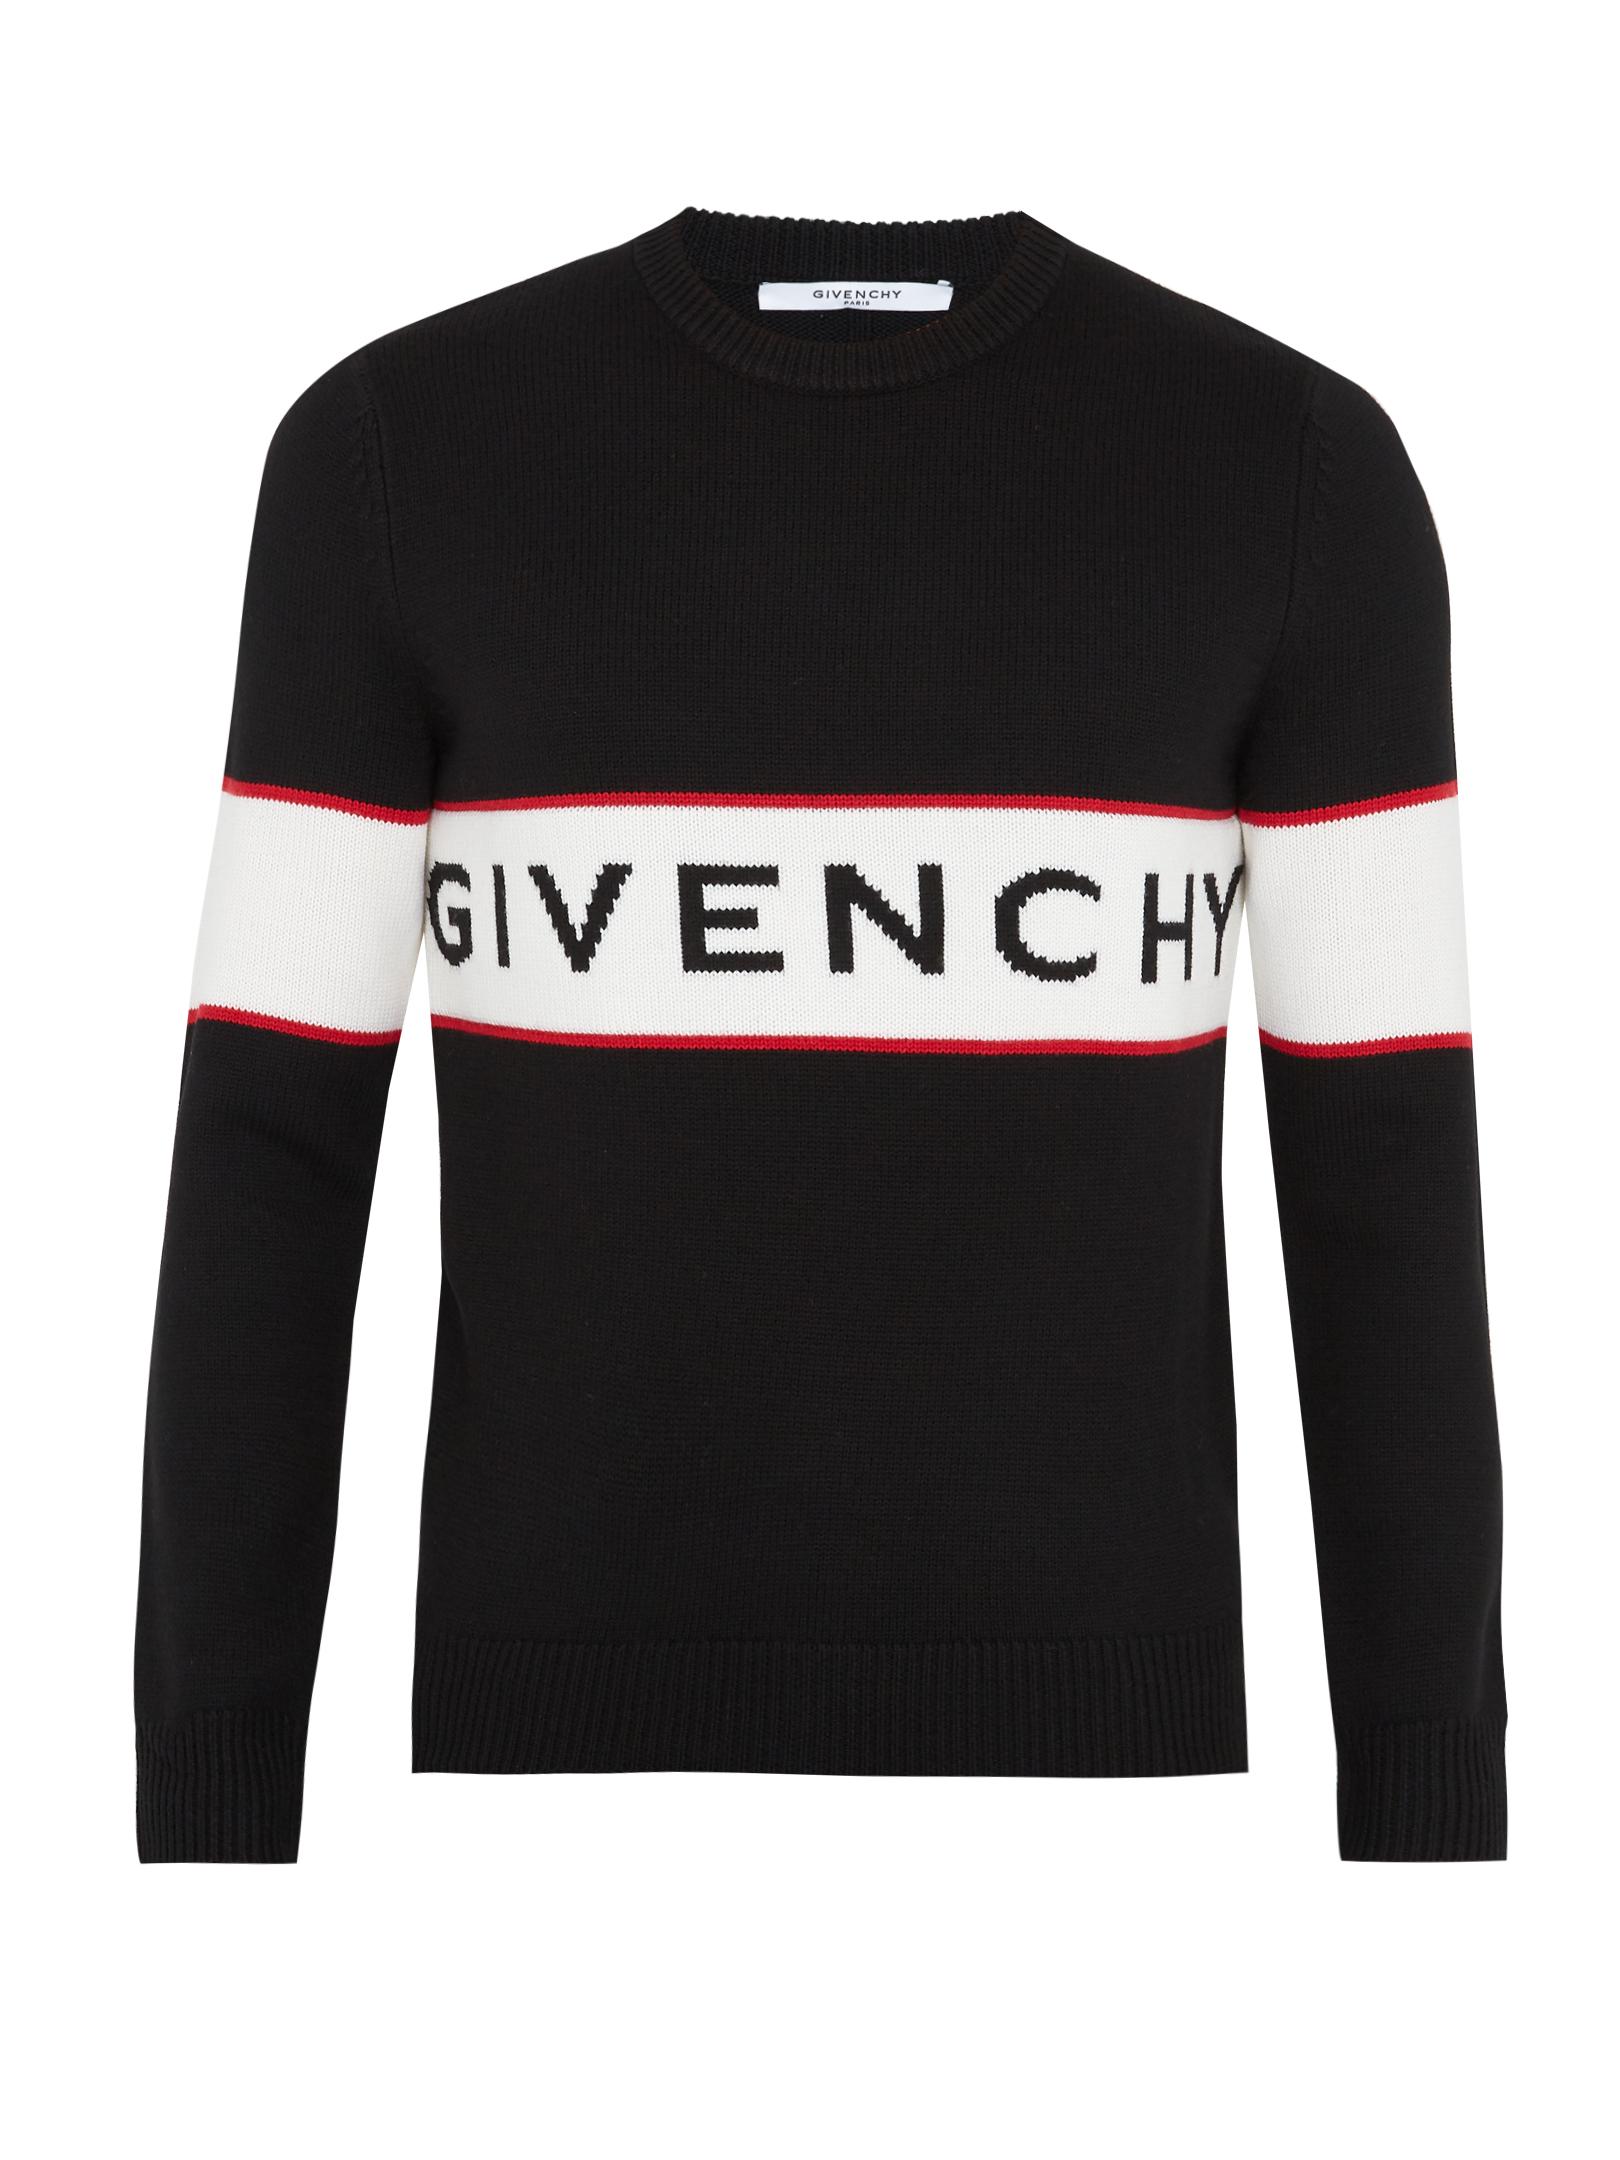 Givenchy Logo Knit Jumper in Black for Men - Lyst